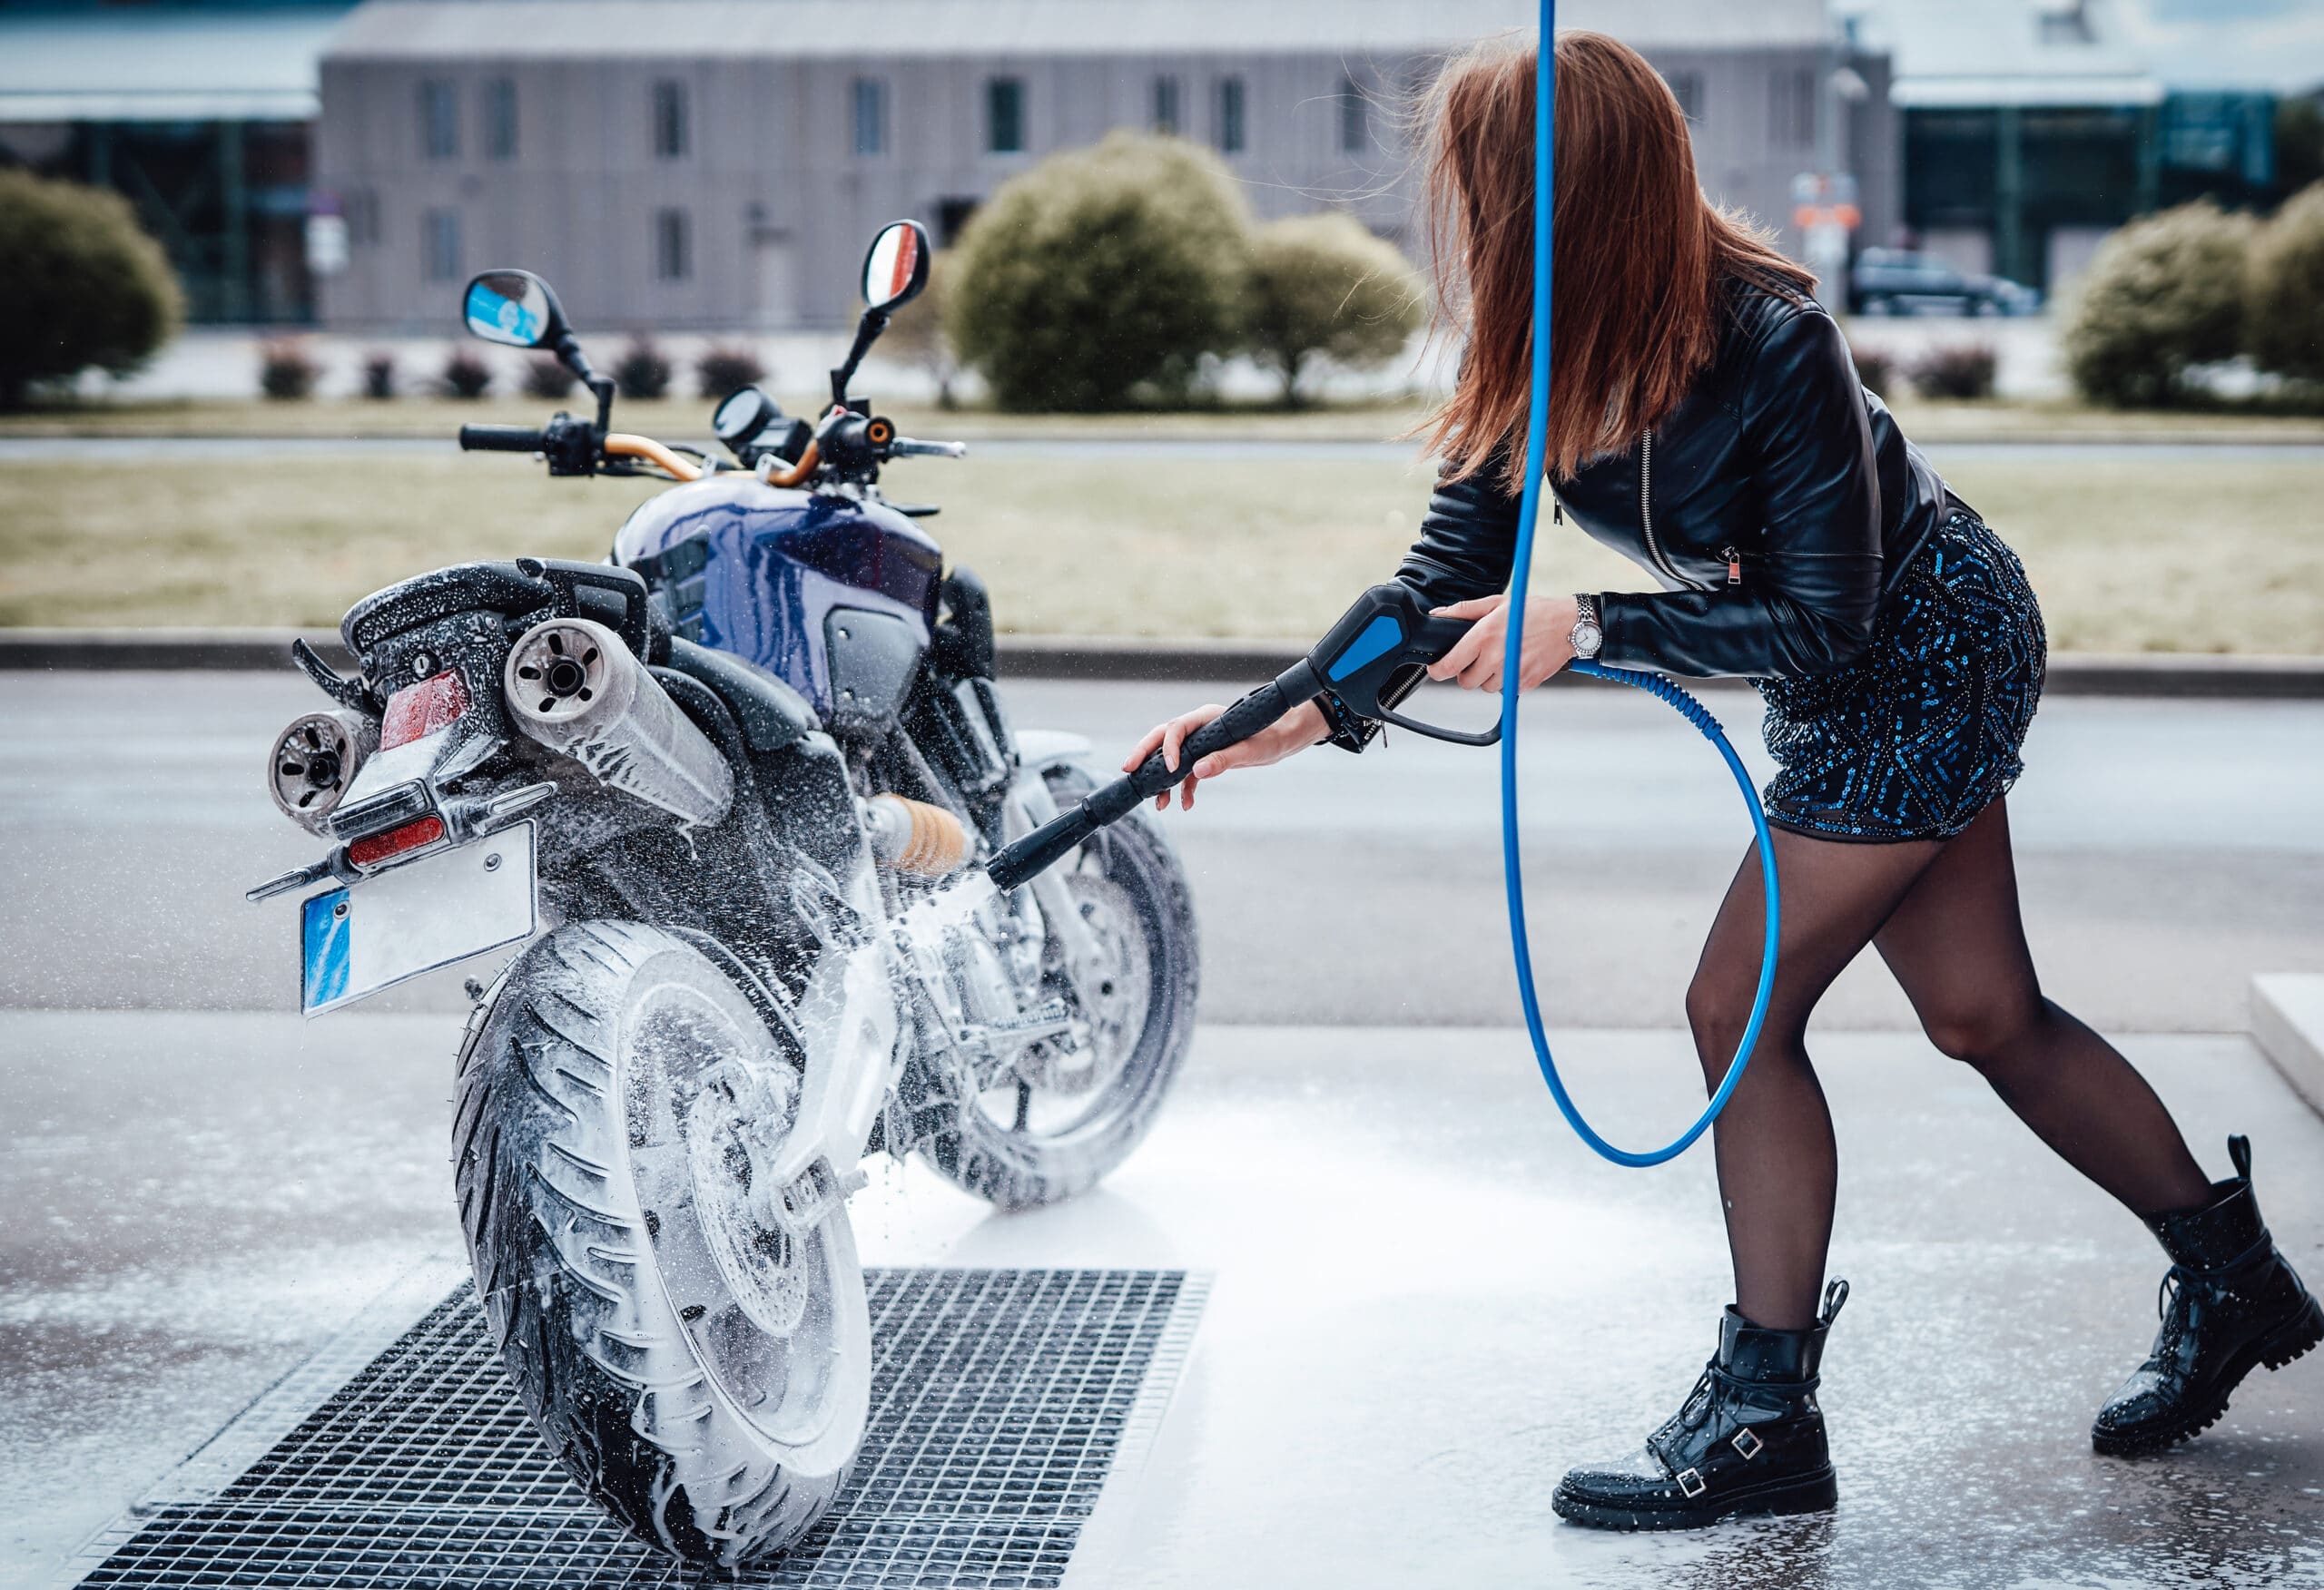 Mycie motocykla na własnym podwórku. Czy grozi za to mandat?